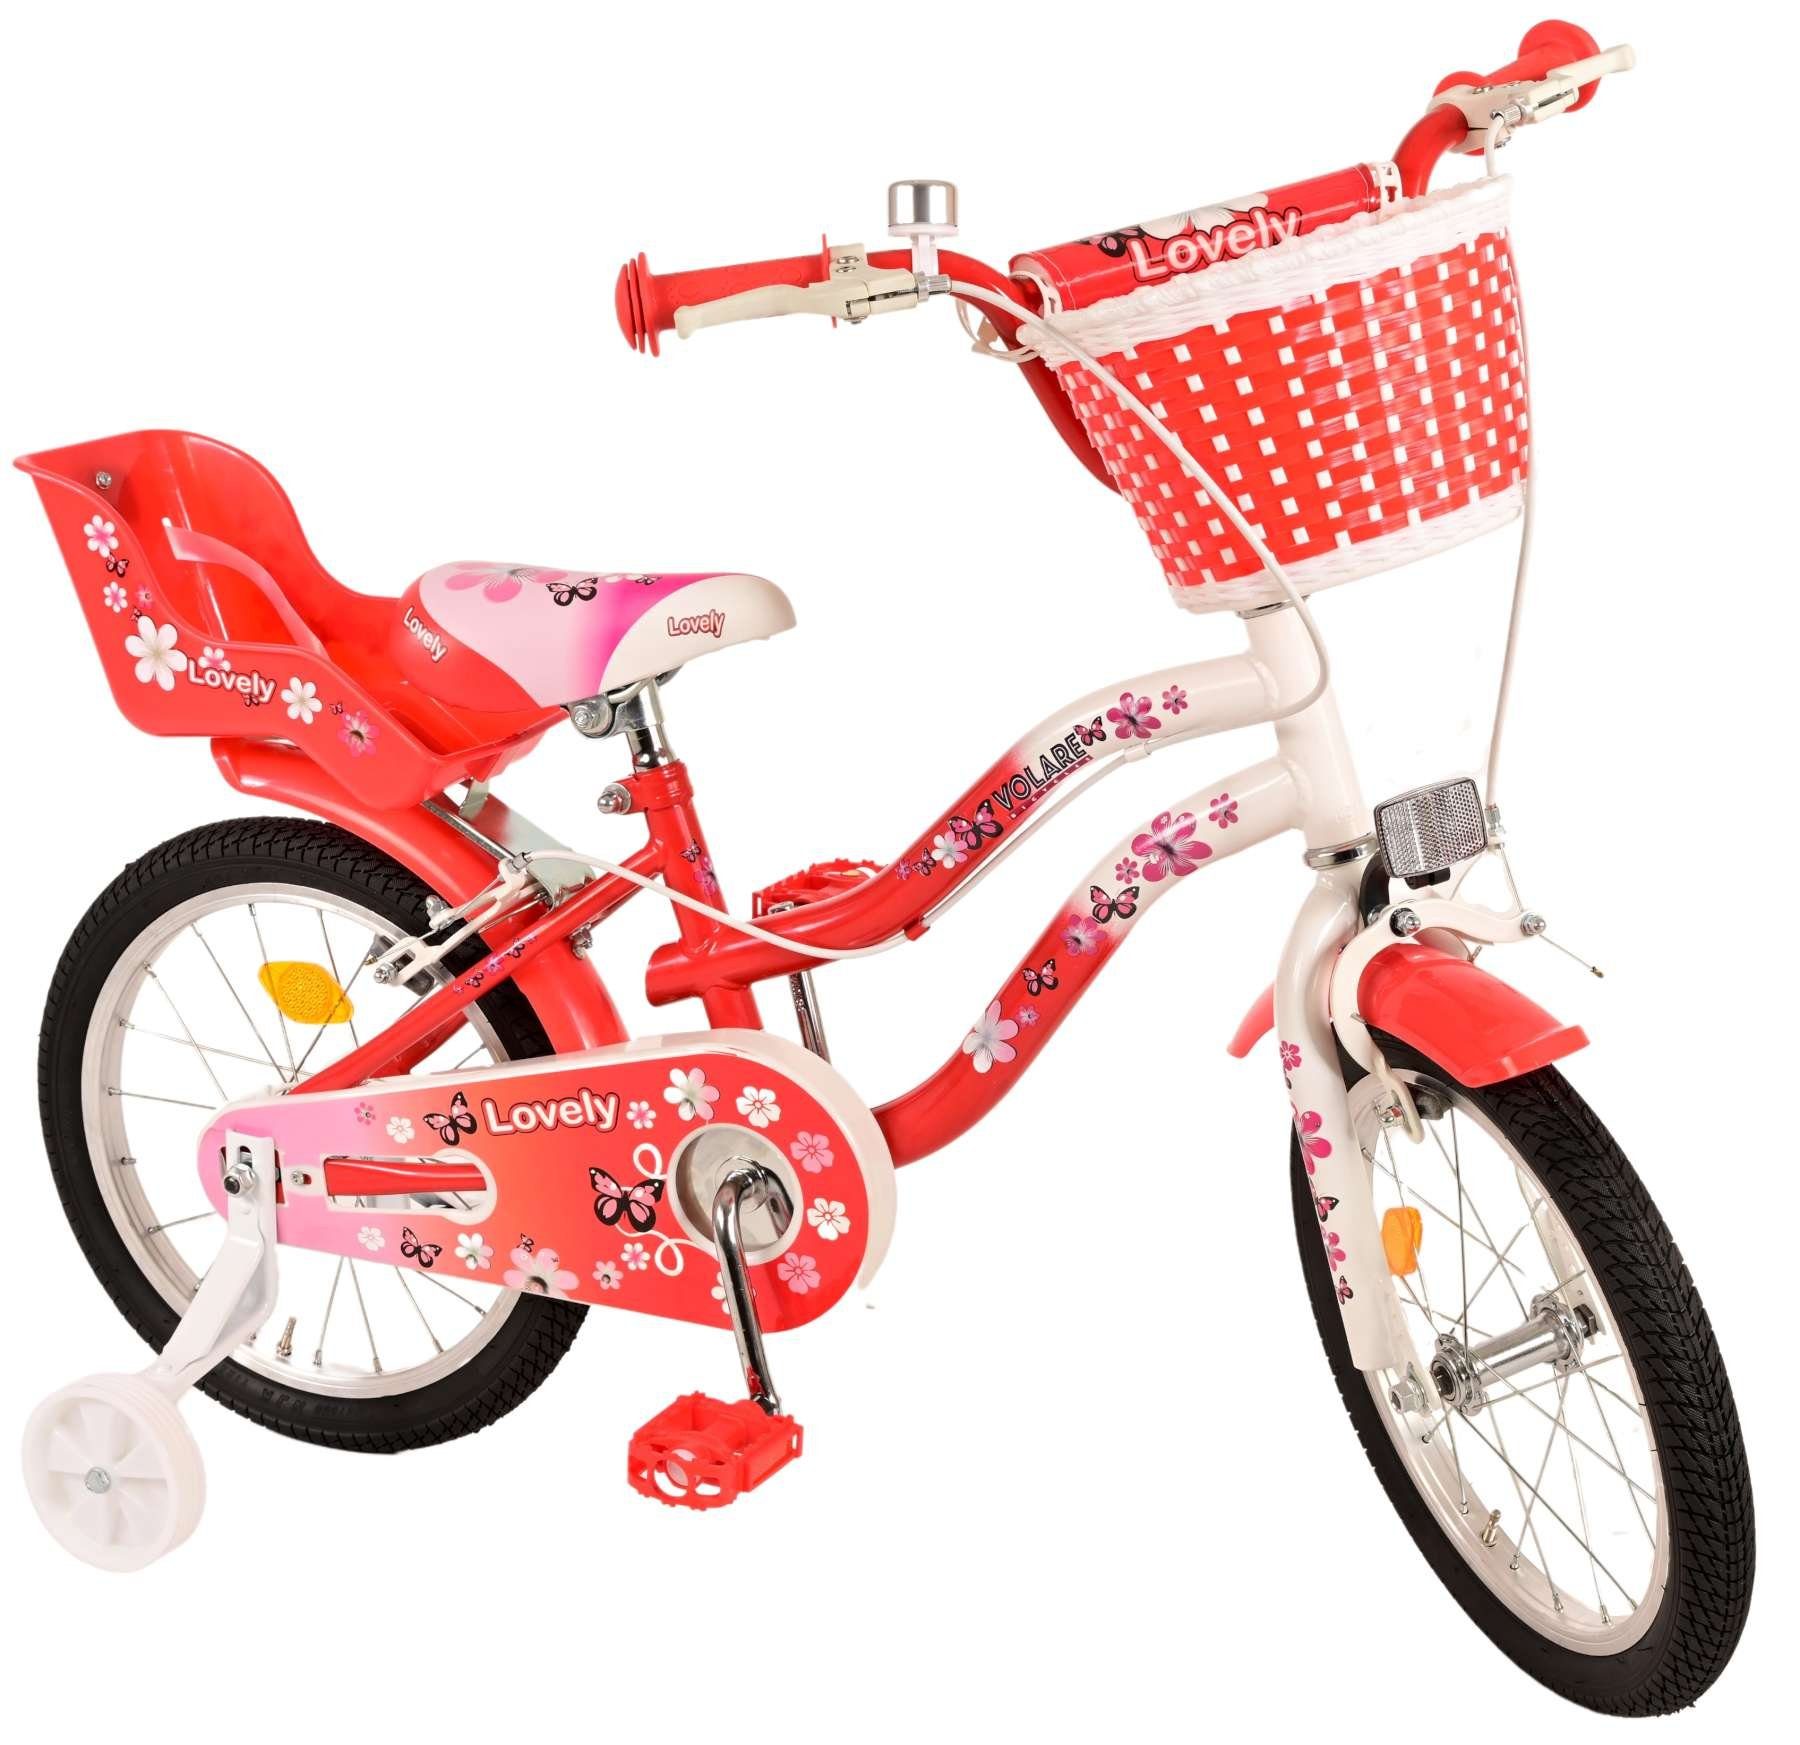 TPFSports Kinderfahrrad Volare Lovely mit 2 Handbremsen, 1 Gang, (Mädchen Fahrrad - Rutschfeste Sicherheitsgriffe), Kinder Fahrrad 16 Zoll mit Stützräder Laufrad Mädchen Kinderrad | Kinderfahrräder